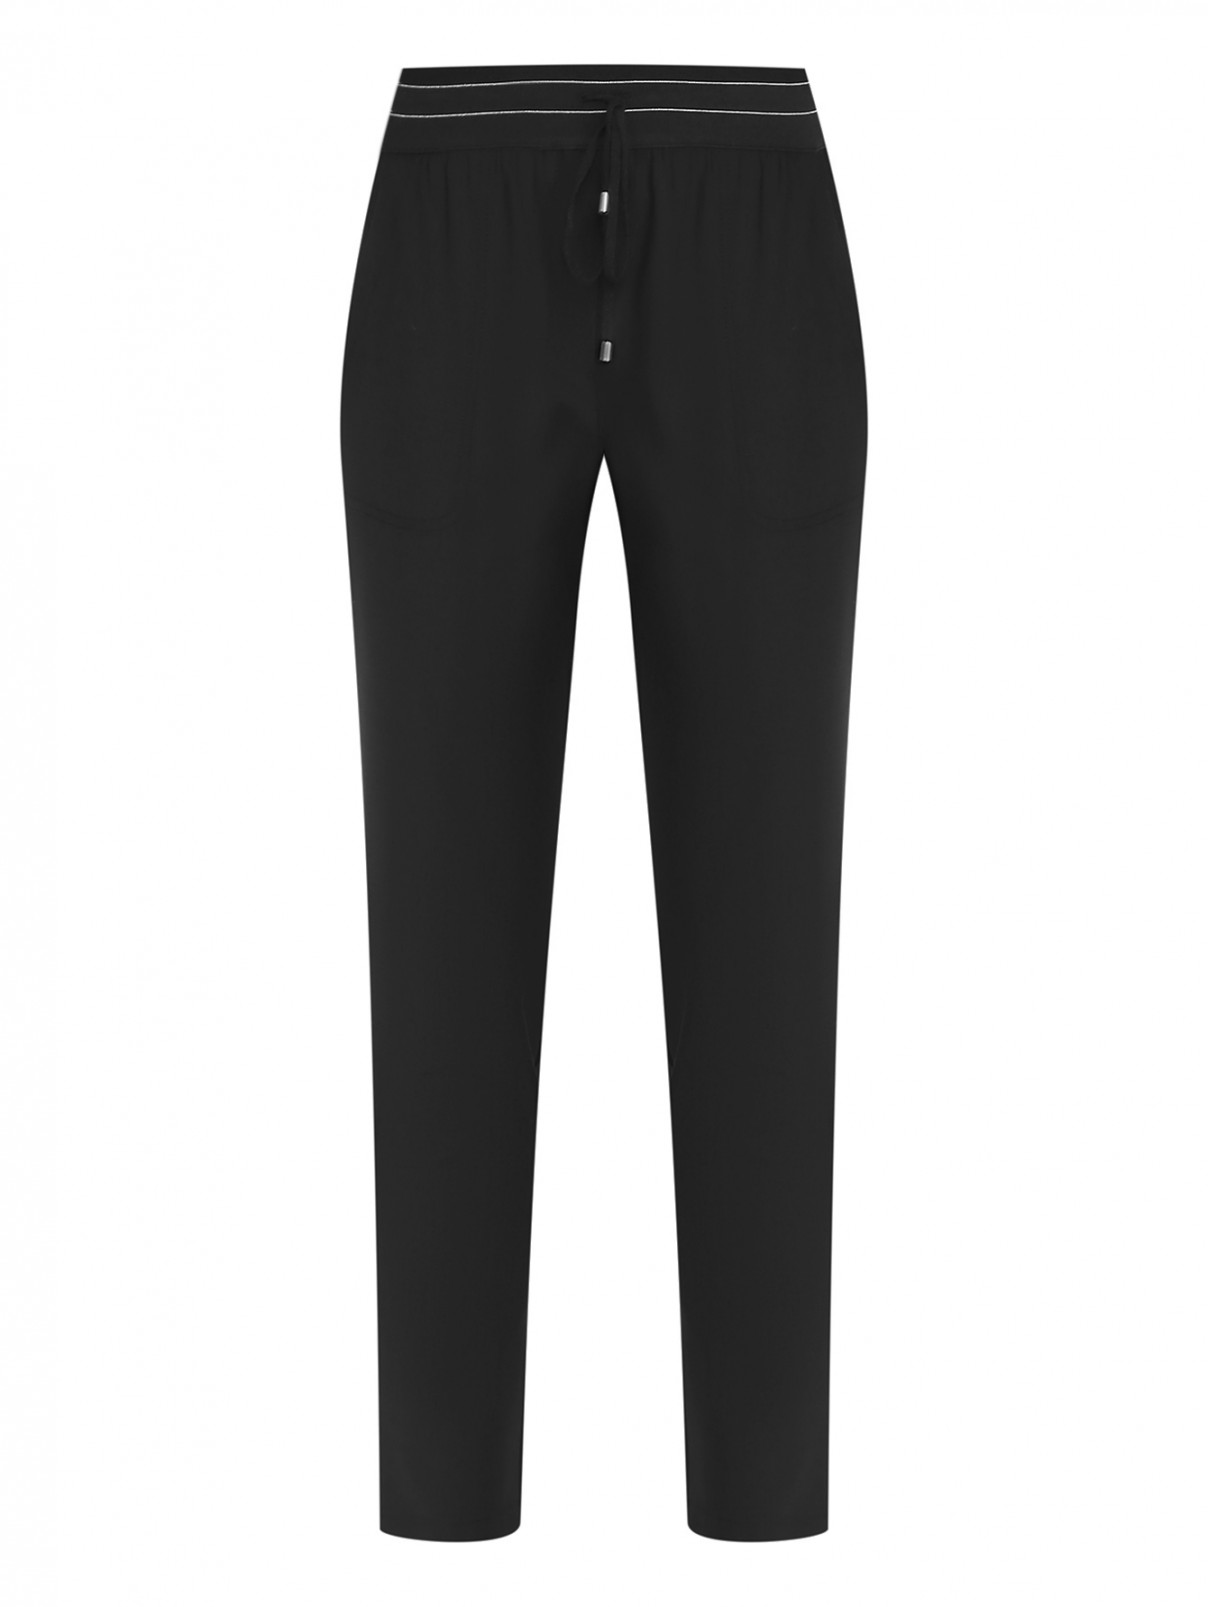 Шерстяные брюки на резинке Lorena Antoniazzi  –  Общий вид  – Цвет:  Черный